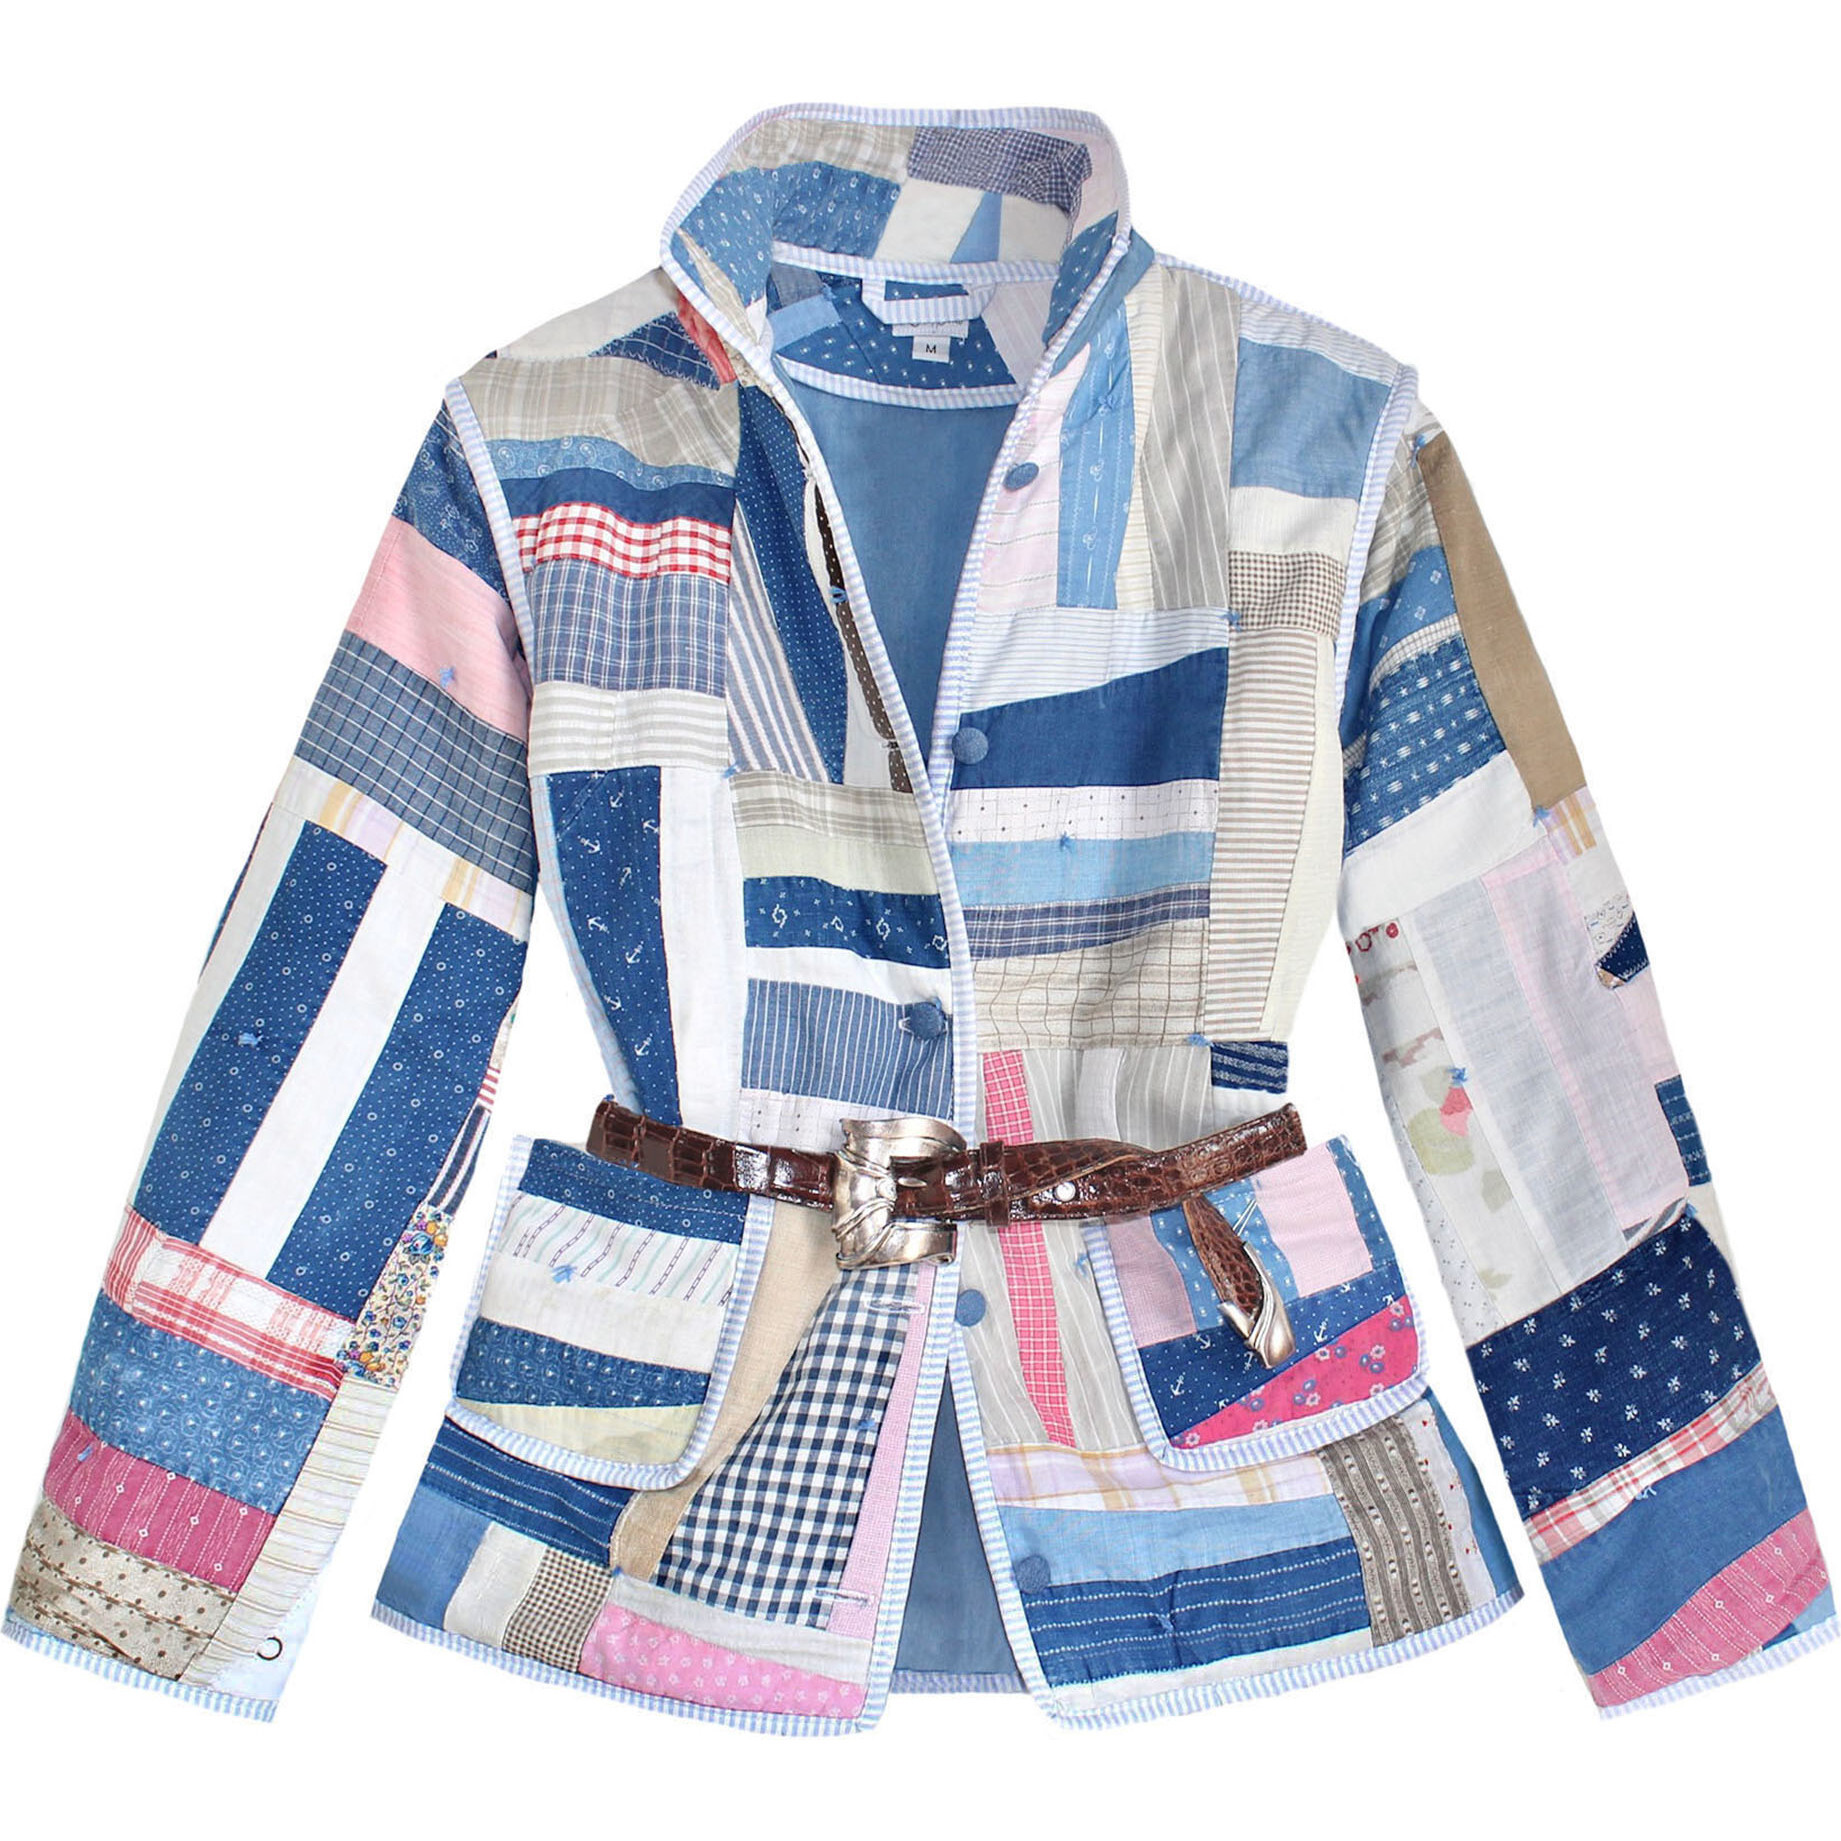 Adult Medium Vintage Quilt Jacket, Iprov Patchwork - Lindsey Berns